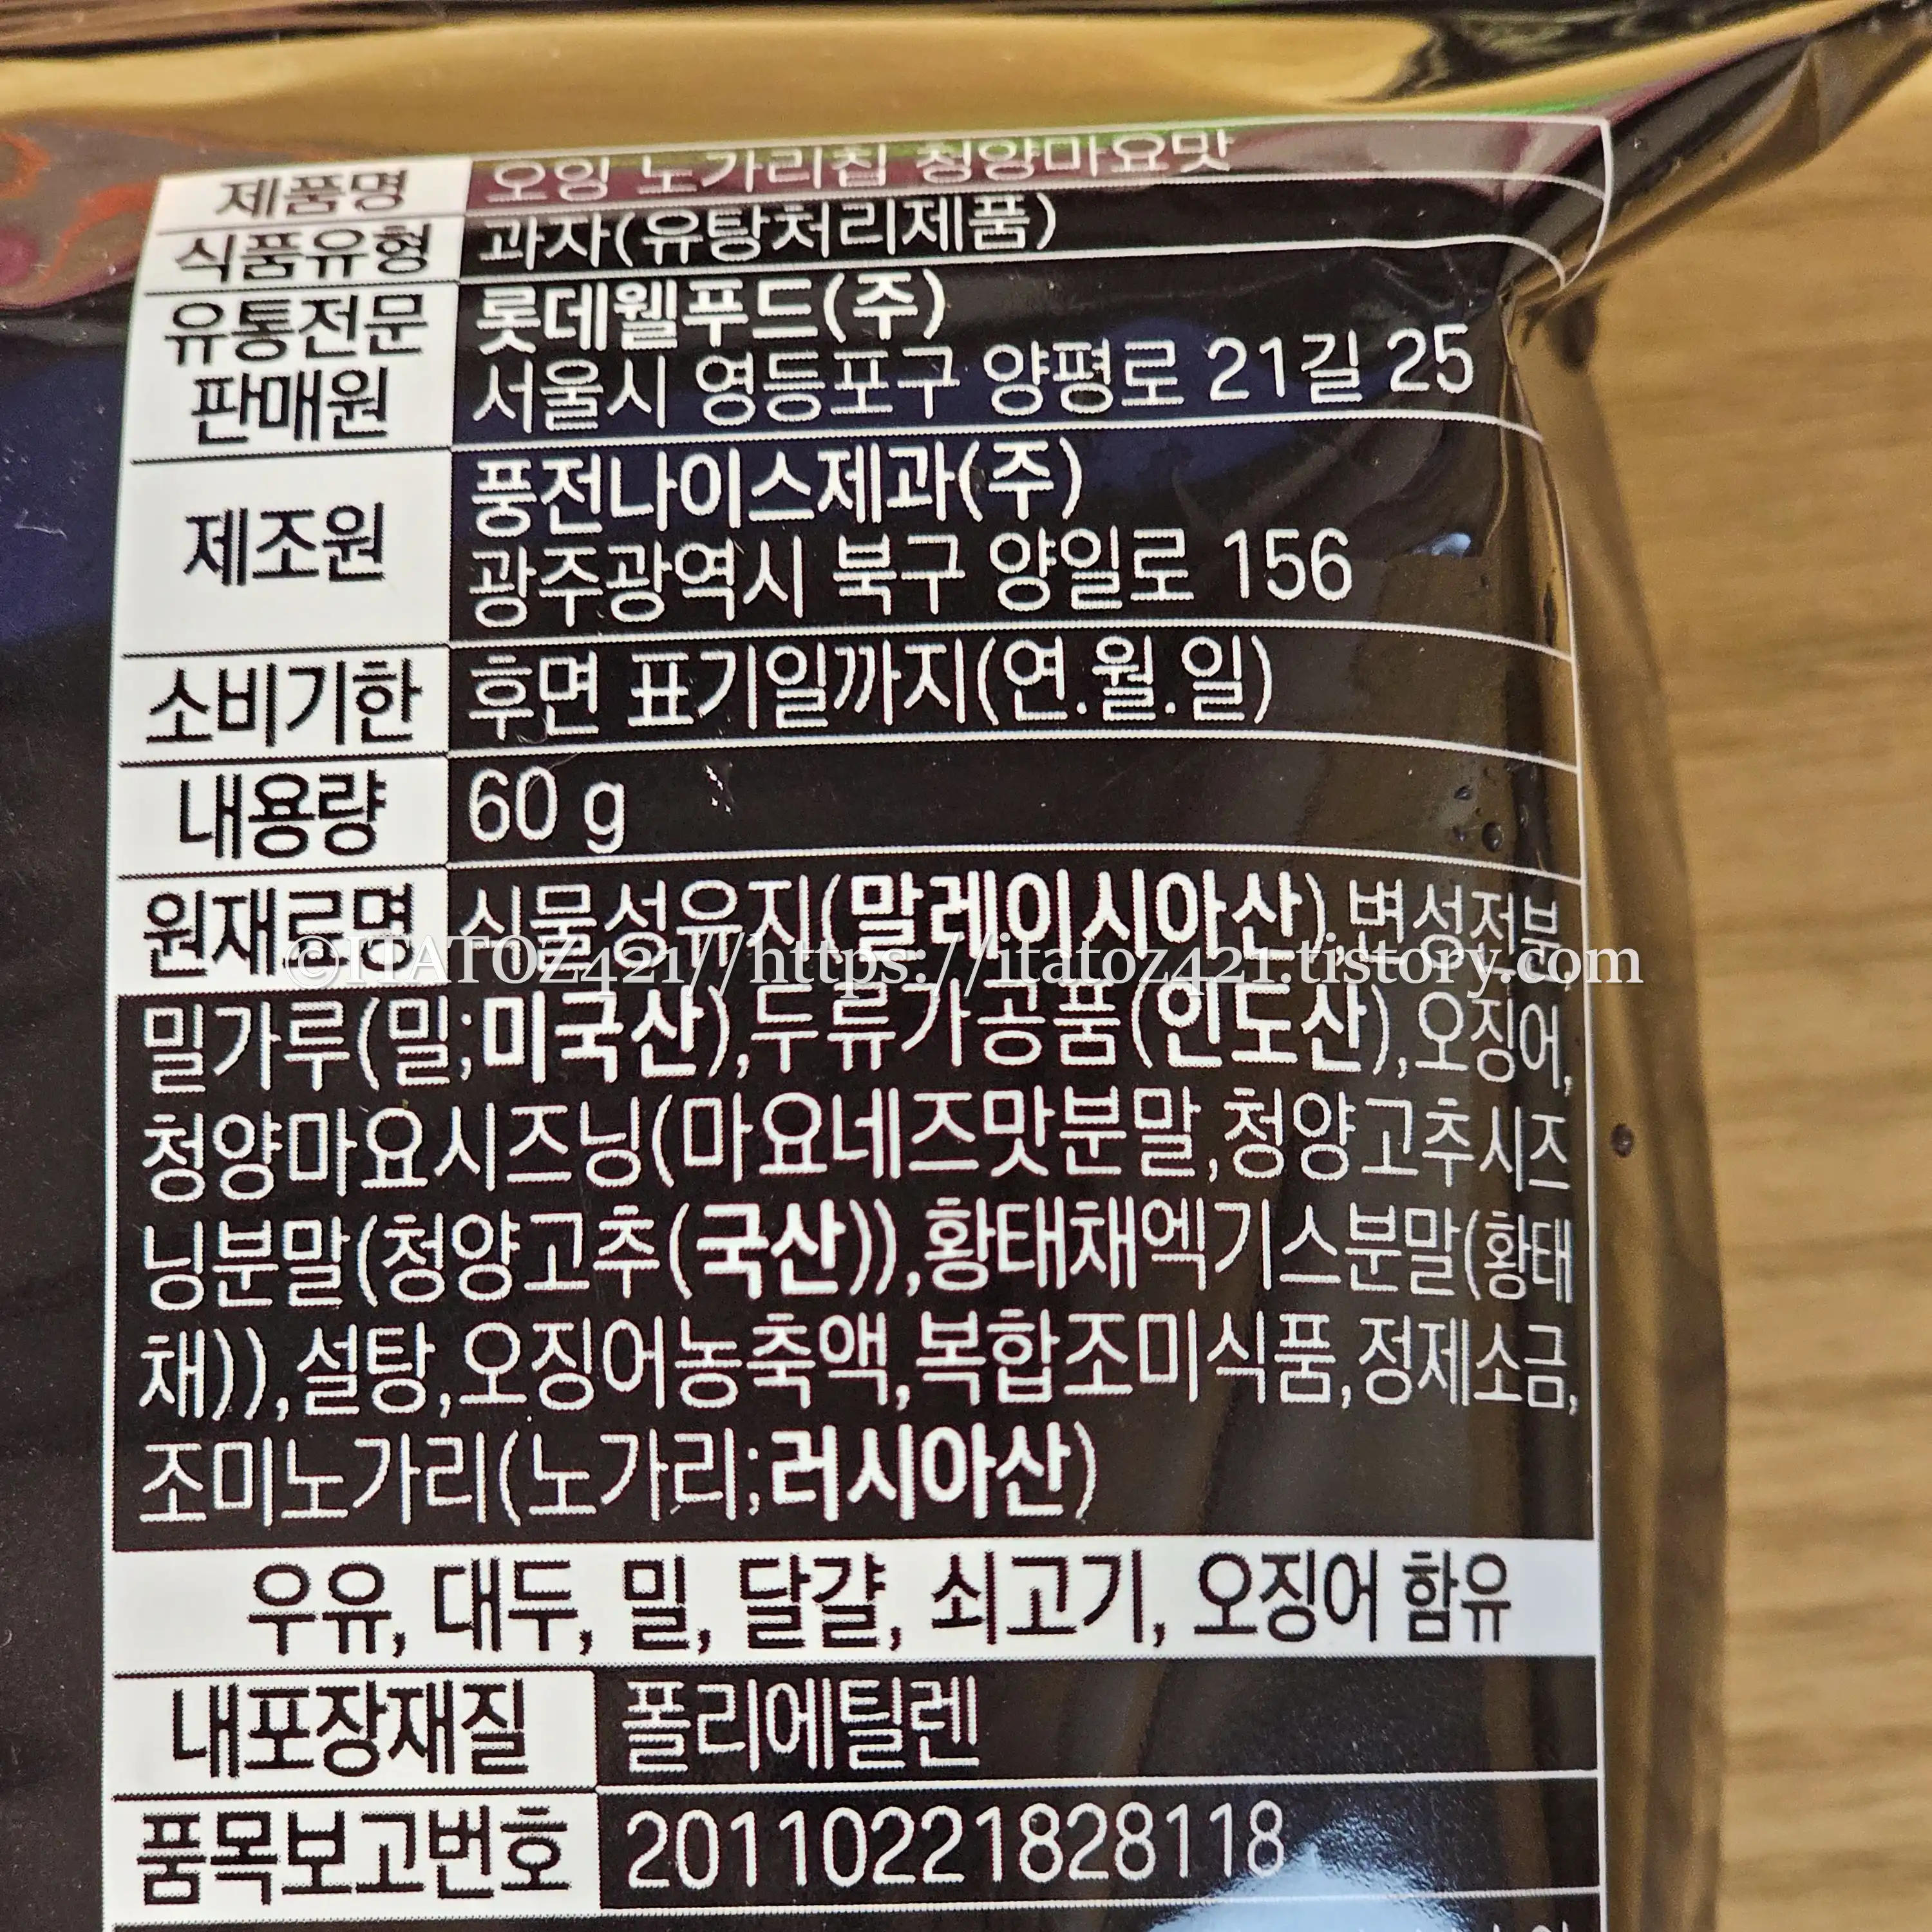 롯데 오잉 노가리 칩 청양마요맛 후기-GS25 스낵 리뷰 가성비 맥주 안주 원재료 명